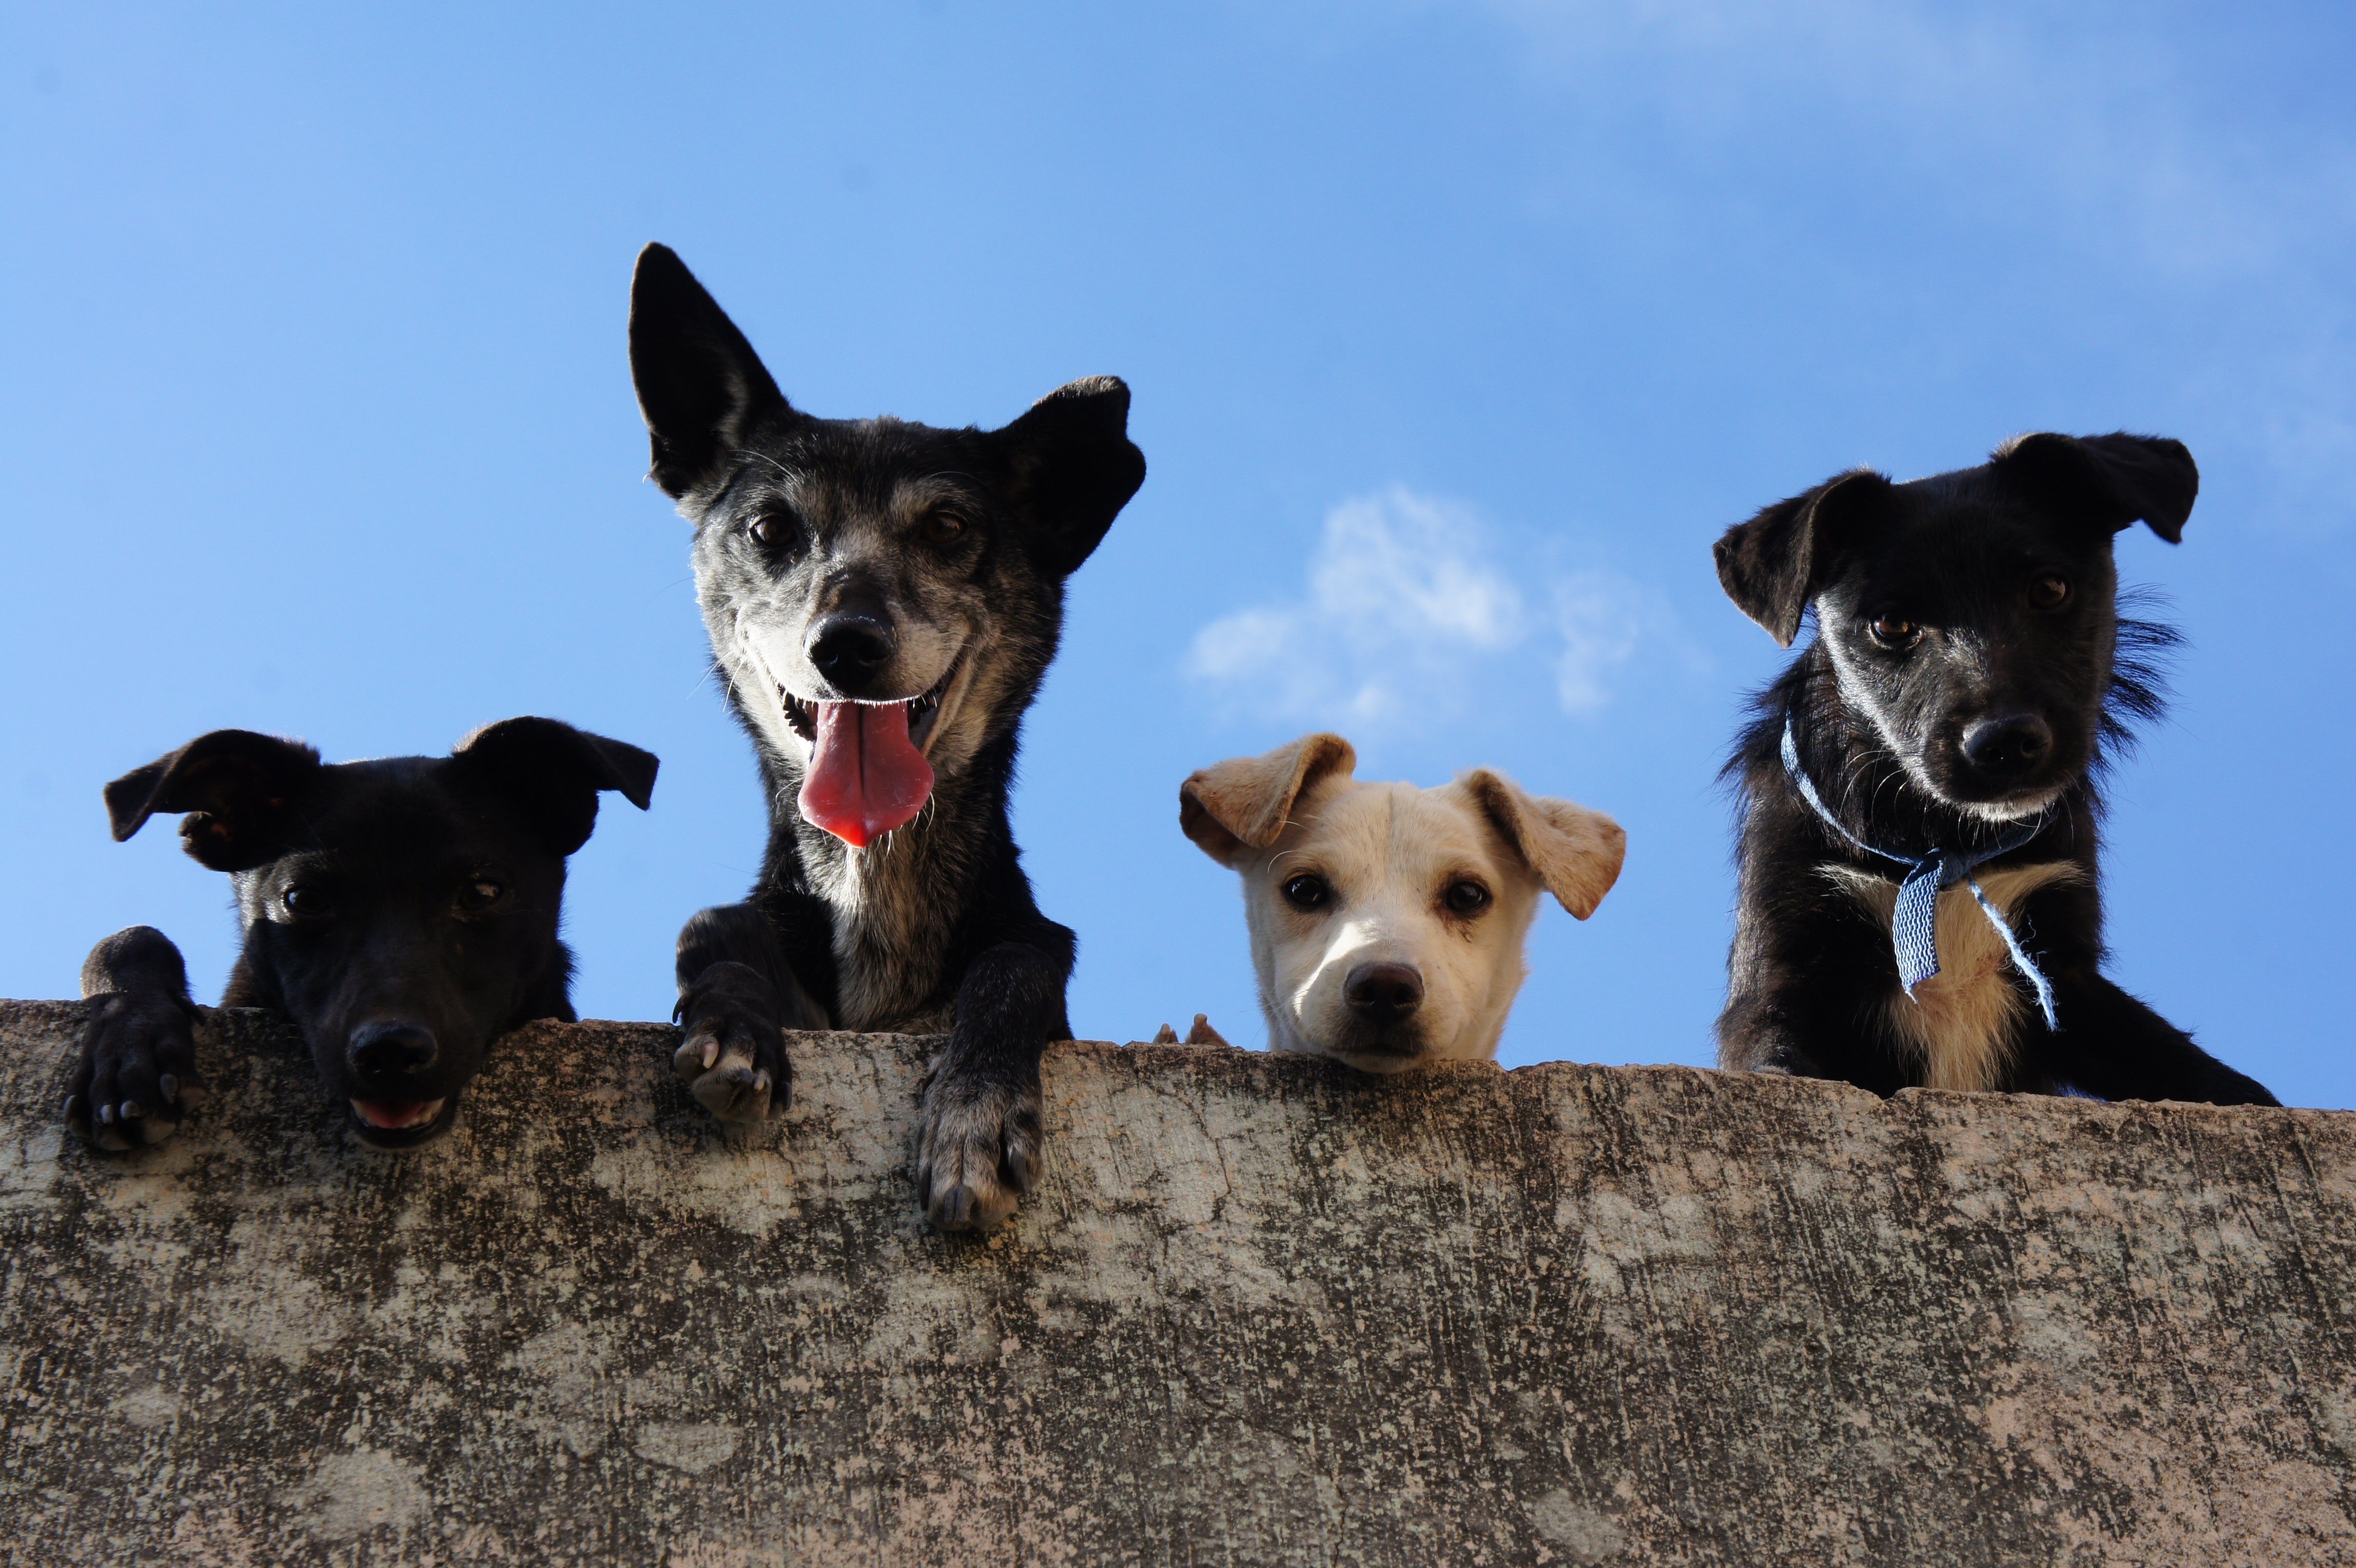 Hundeversicherungen ab 32,05€ im Jahr. Wichtige Infos zur Hunde-OP, Hundkrankenversicherung oder Hundehaftpflicht finden Sie hier ⭐